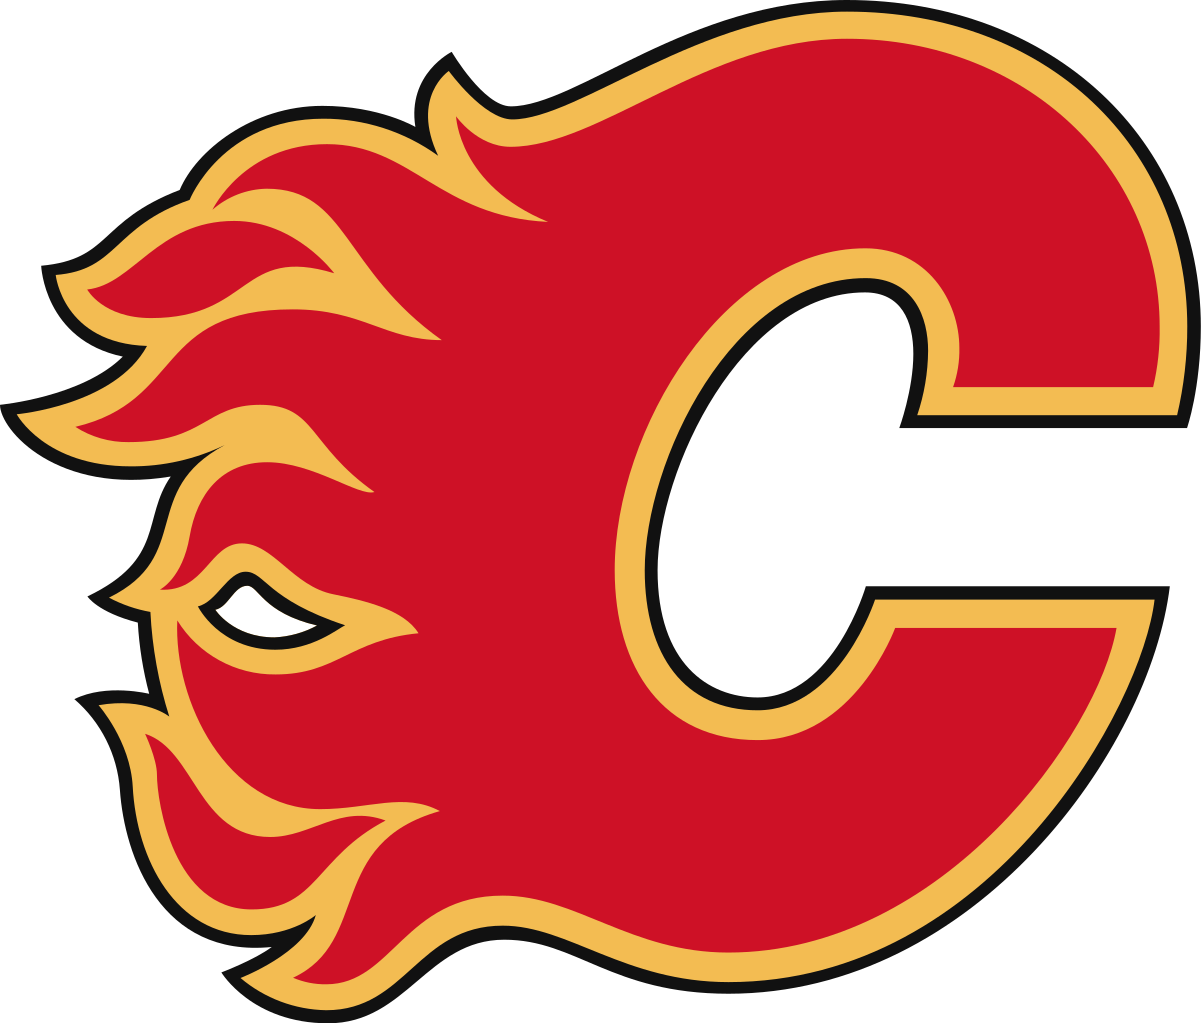 At - Calgary Flames Logo (1203x1024)